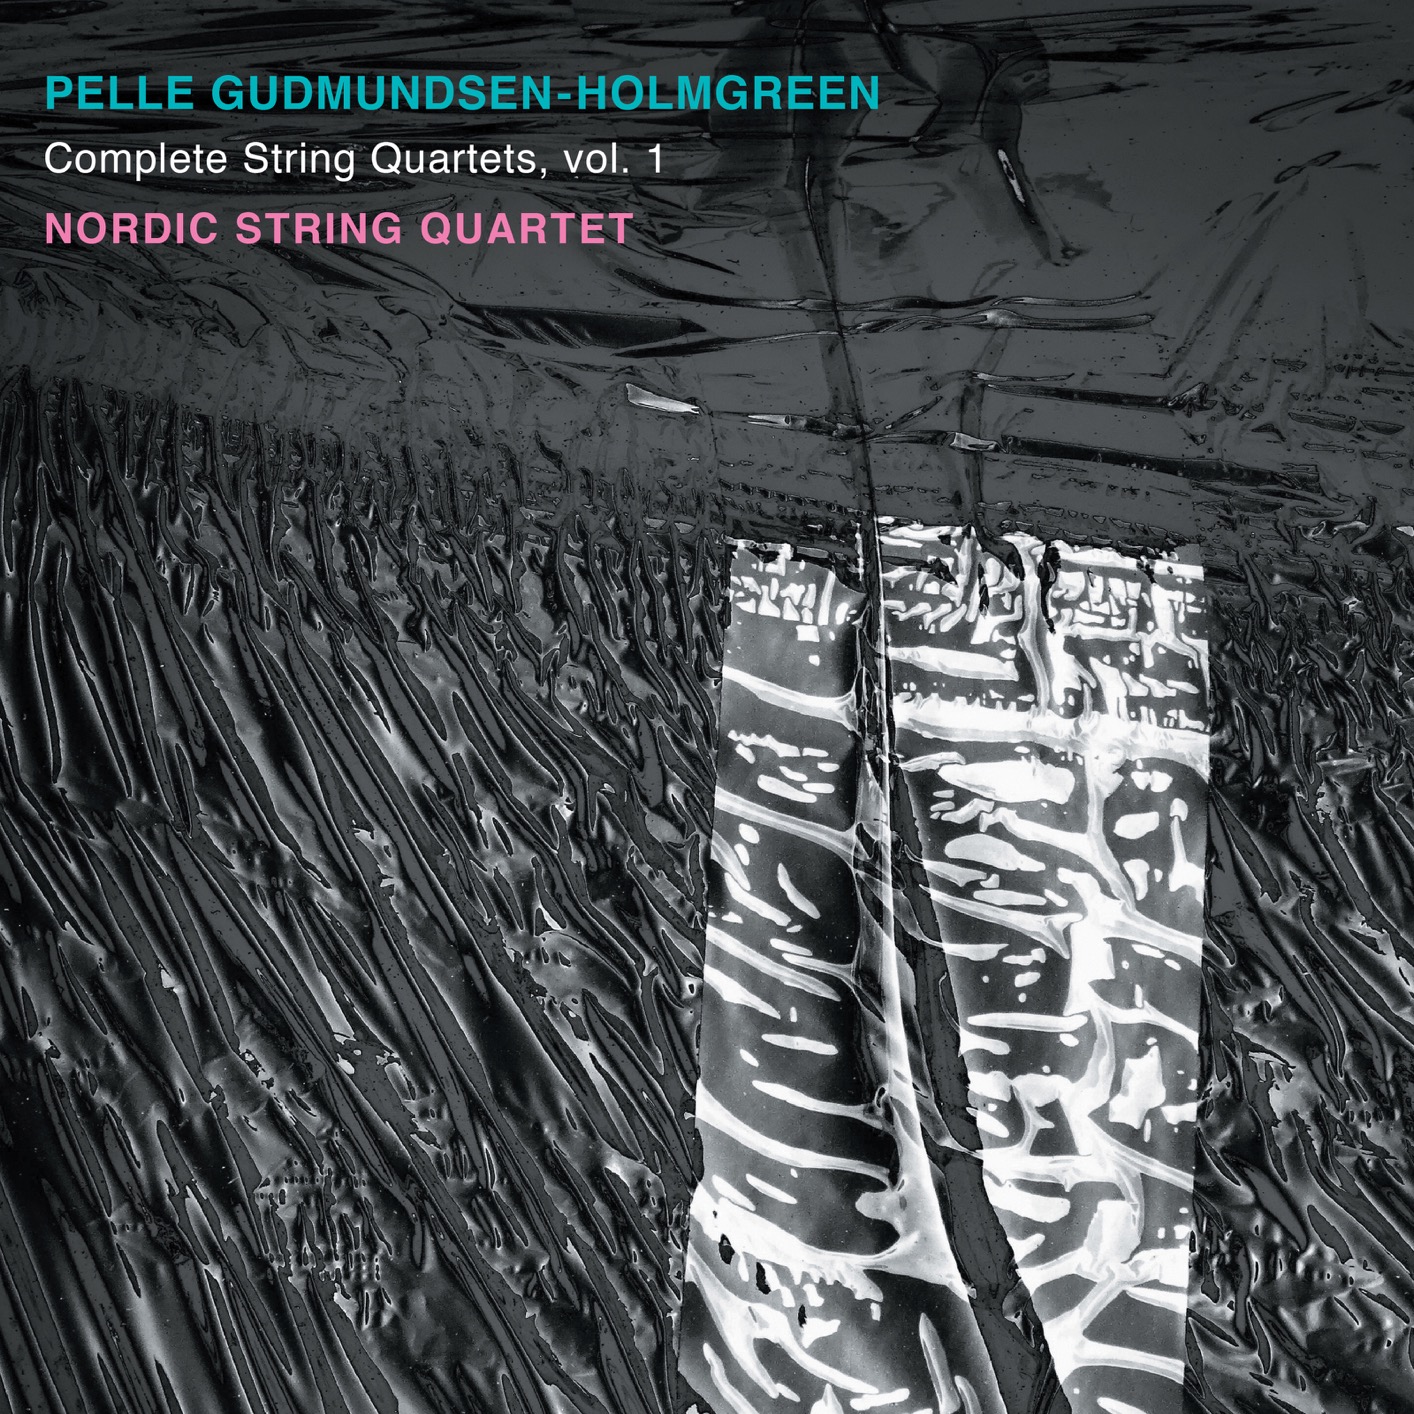 Nordic String Quartet - Gudmundsen-Holmgreen: Complete String Quartets, Vol. 1 (2019) [FLAC 24bit/192kHz]